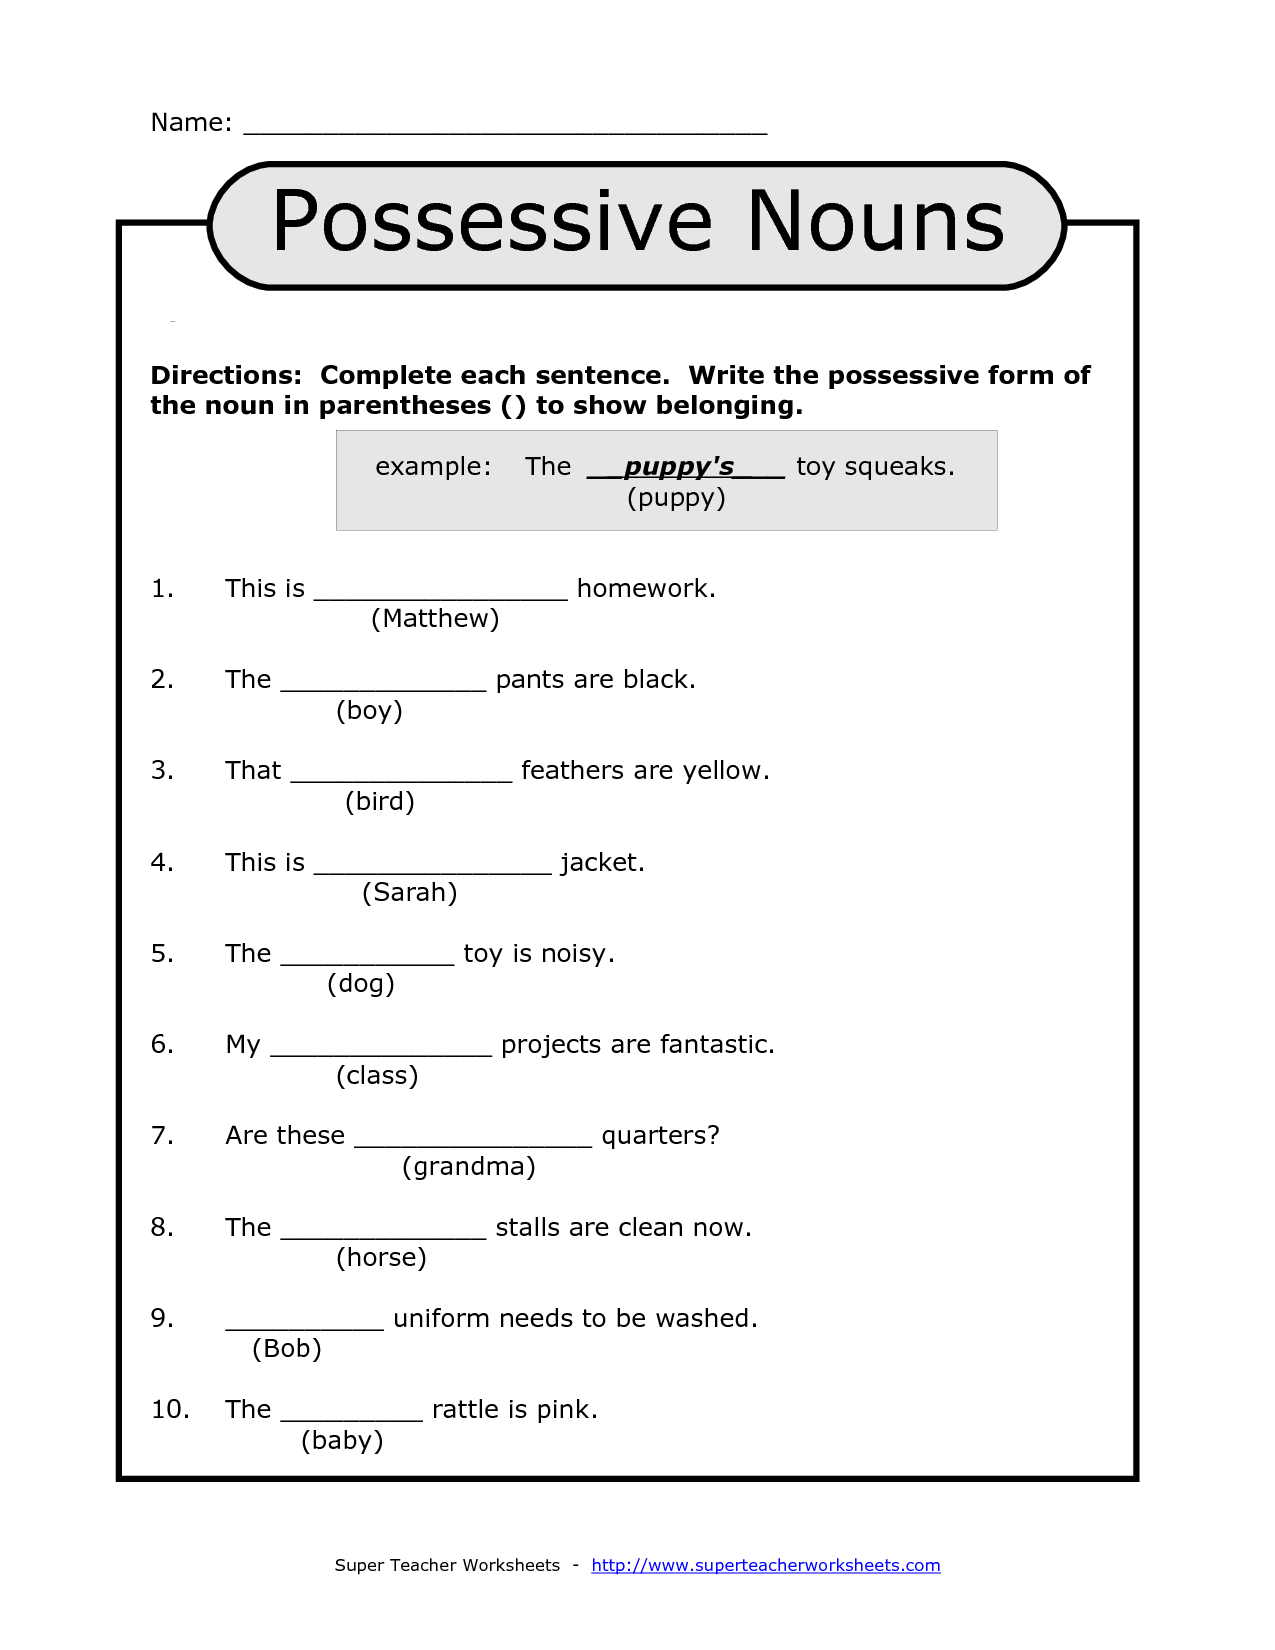 16-best-images-of-possessive-noun-worksheets-4-6-possessive-nouns